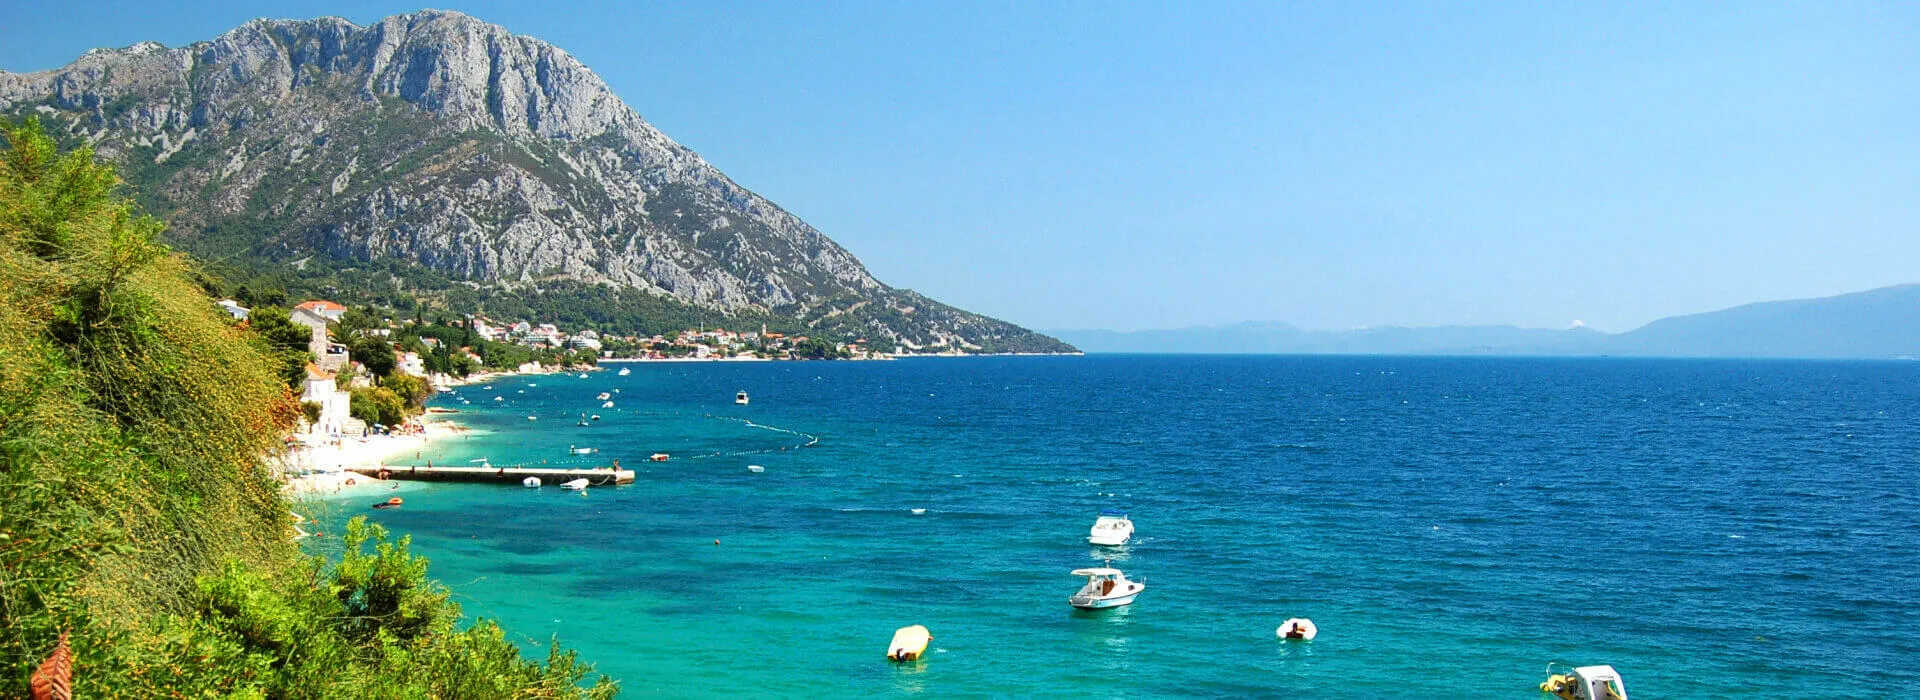 Hotels in Kroatien background image